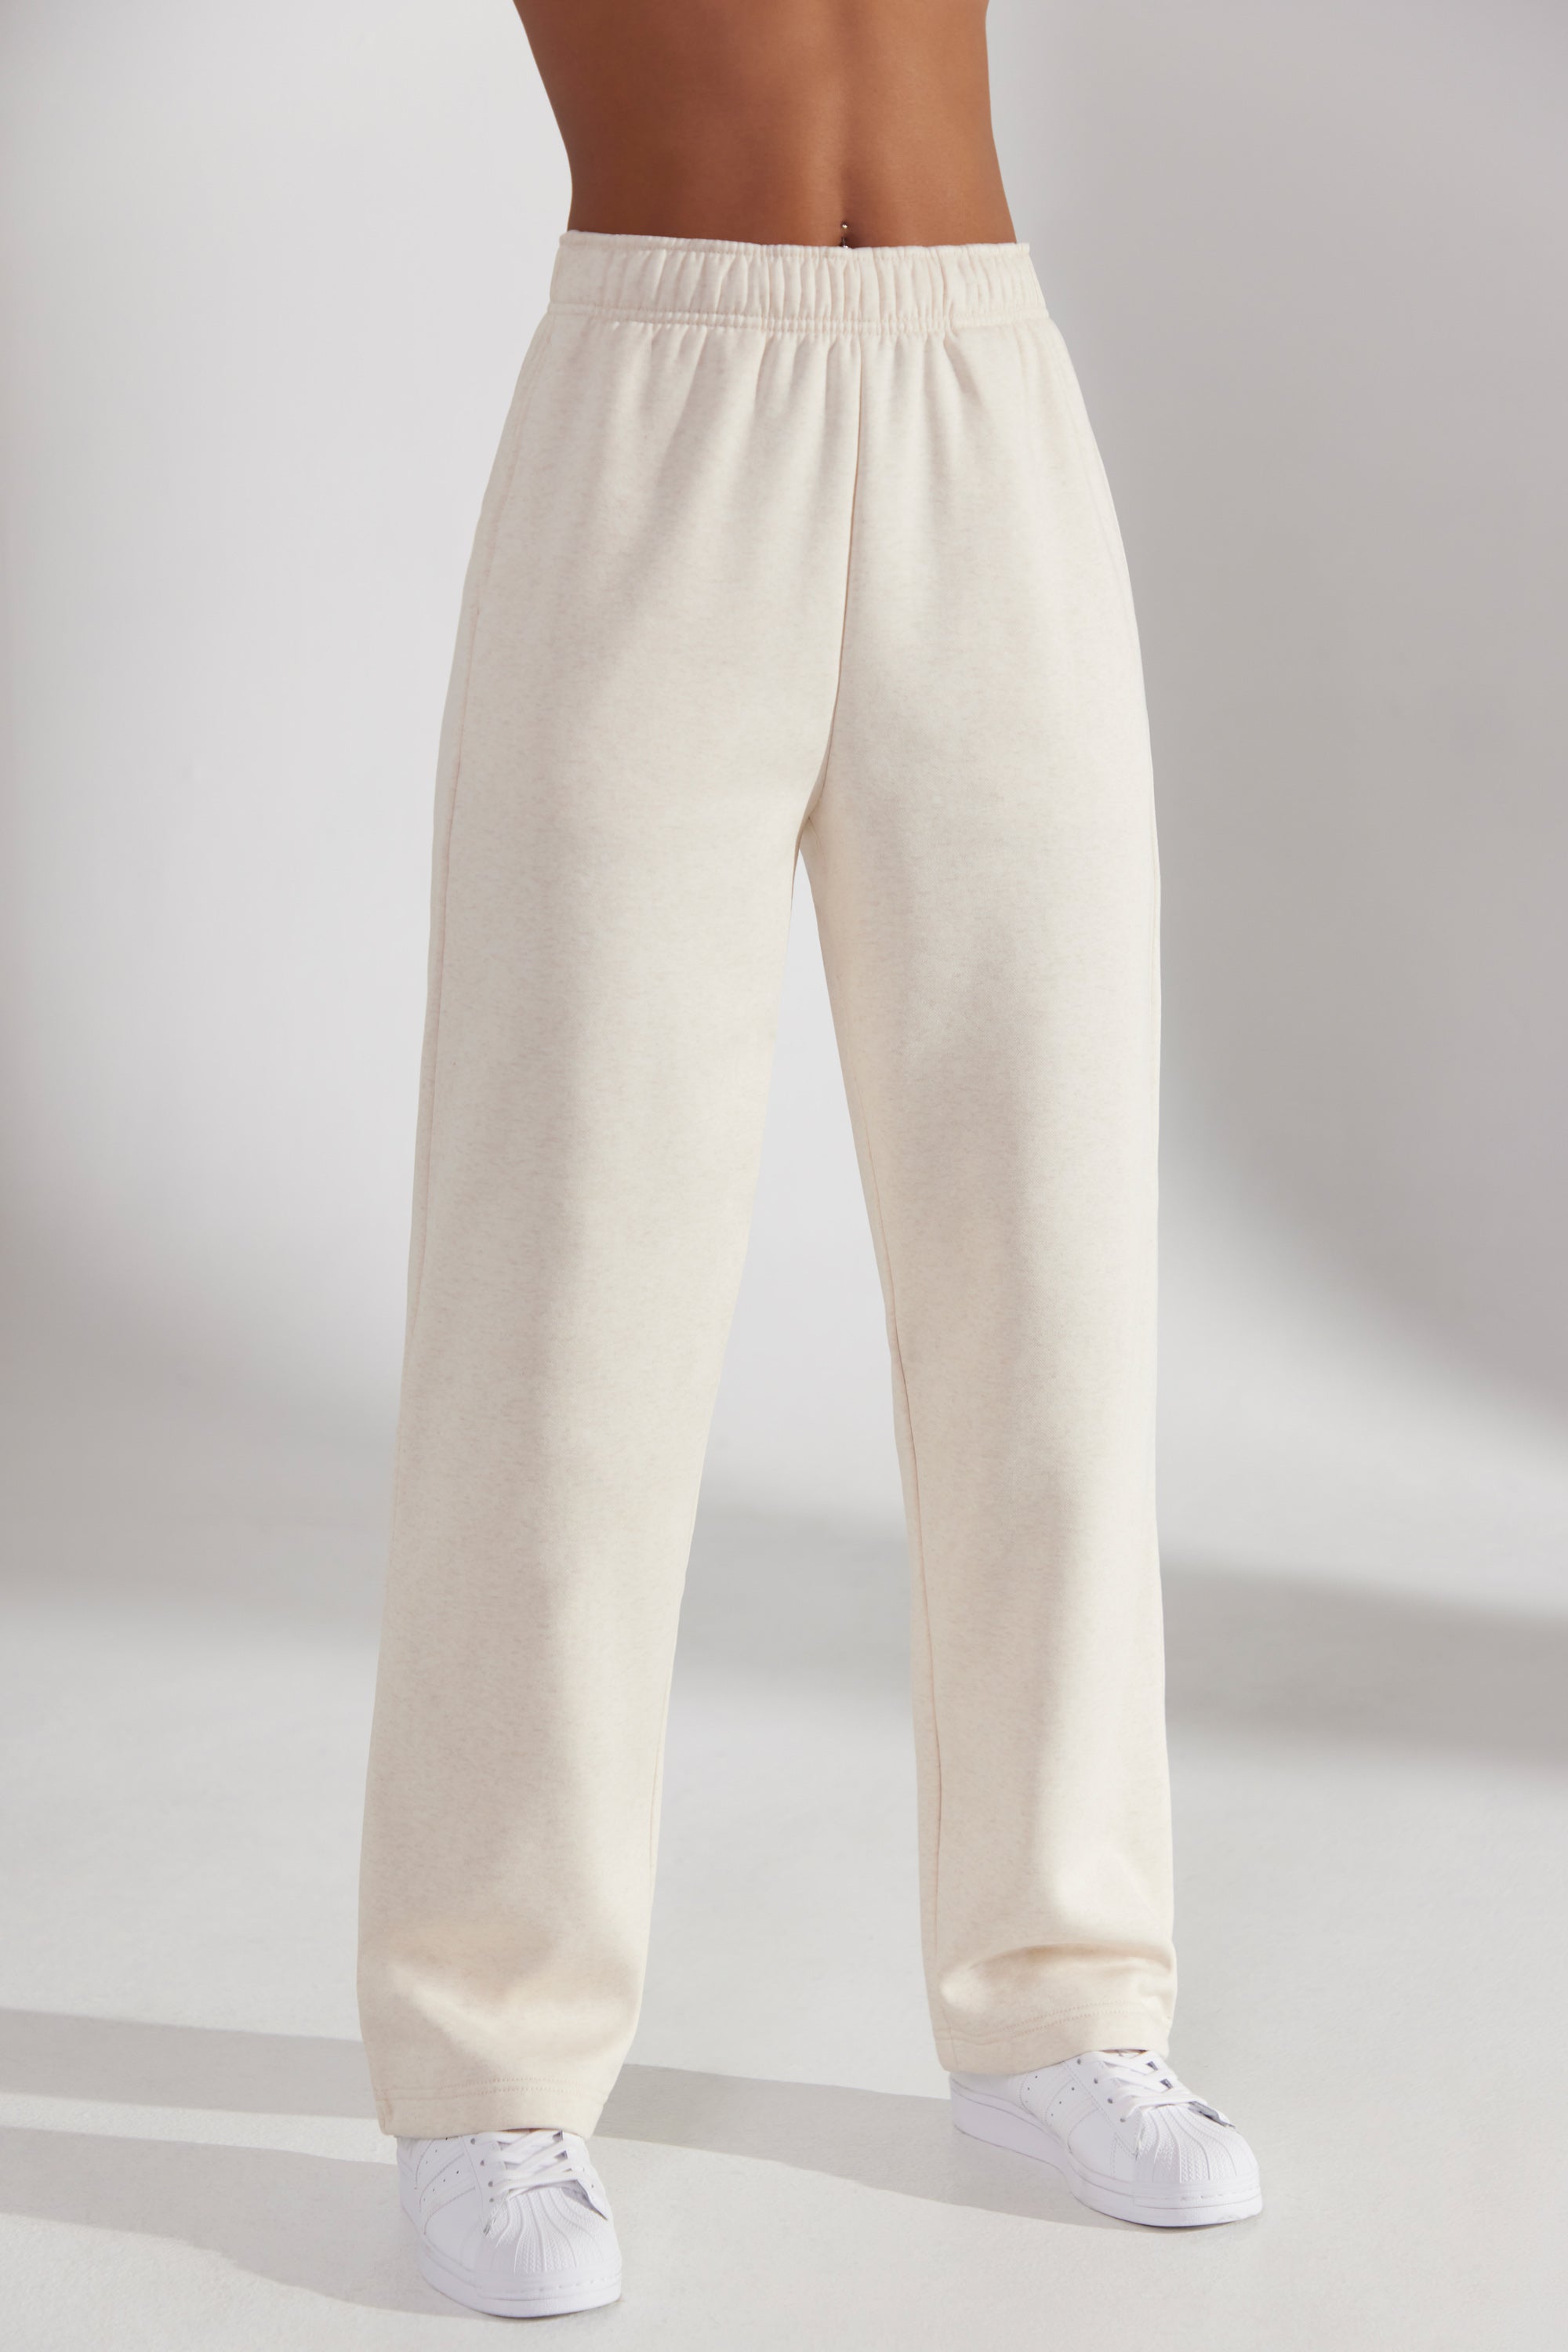 Women's High-Rise Open Bottom Fleece Pants - JoyLab™ Beige XS